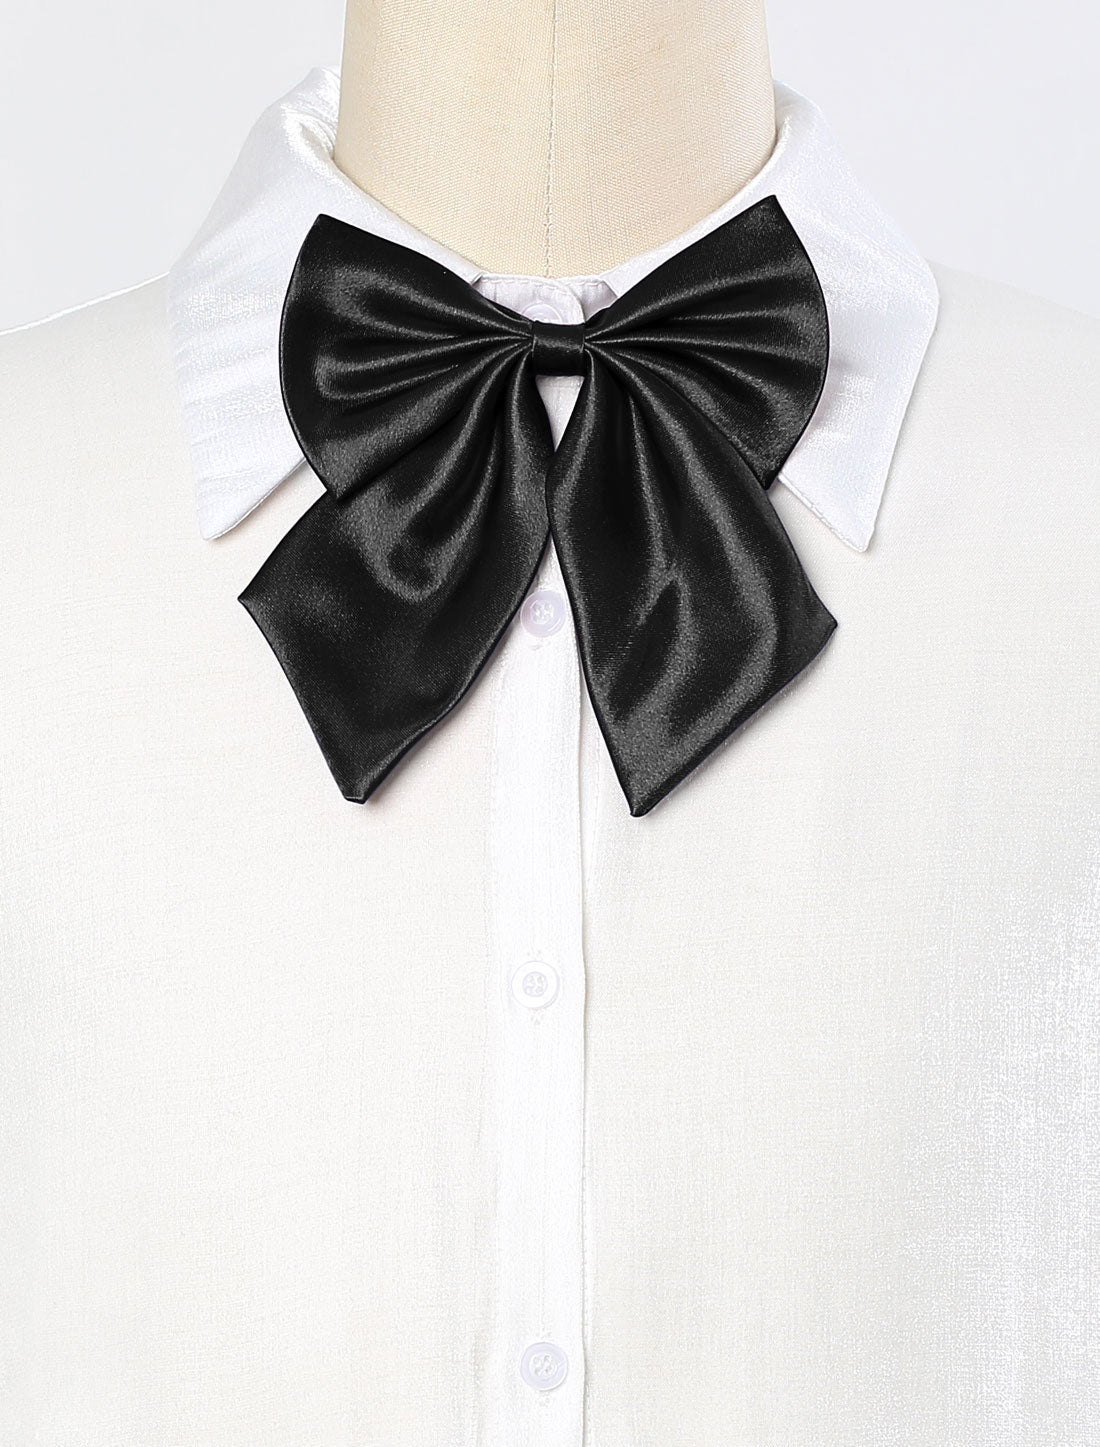 Bublédon Women's Solid Color Pre-tied Bowknot Halter Neck Adjustable Uniform Bow Tie